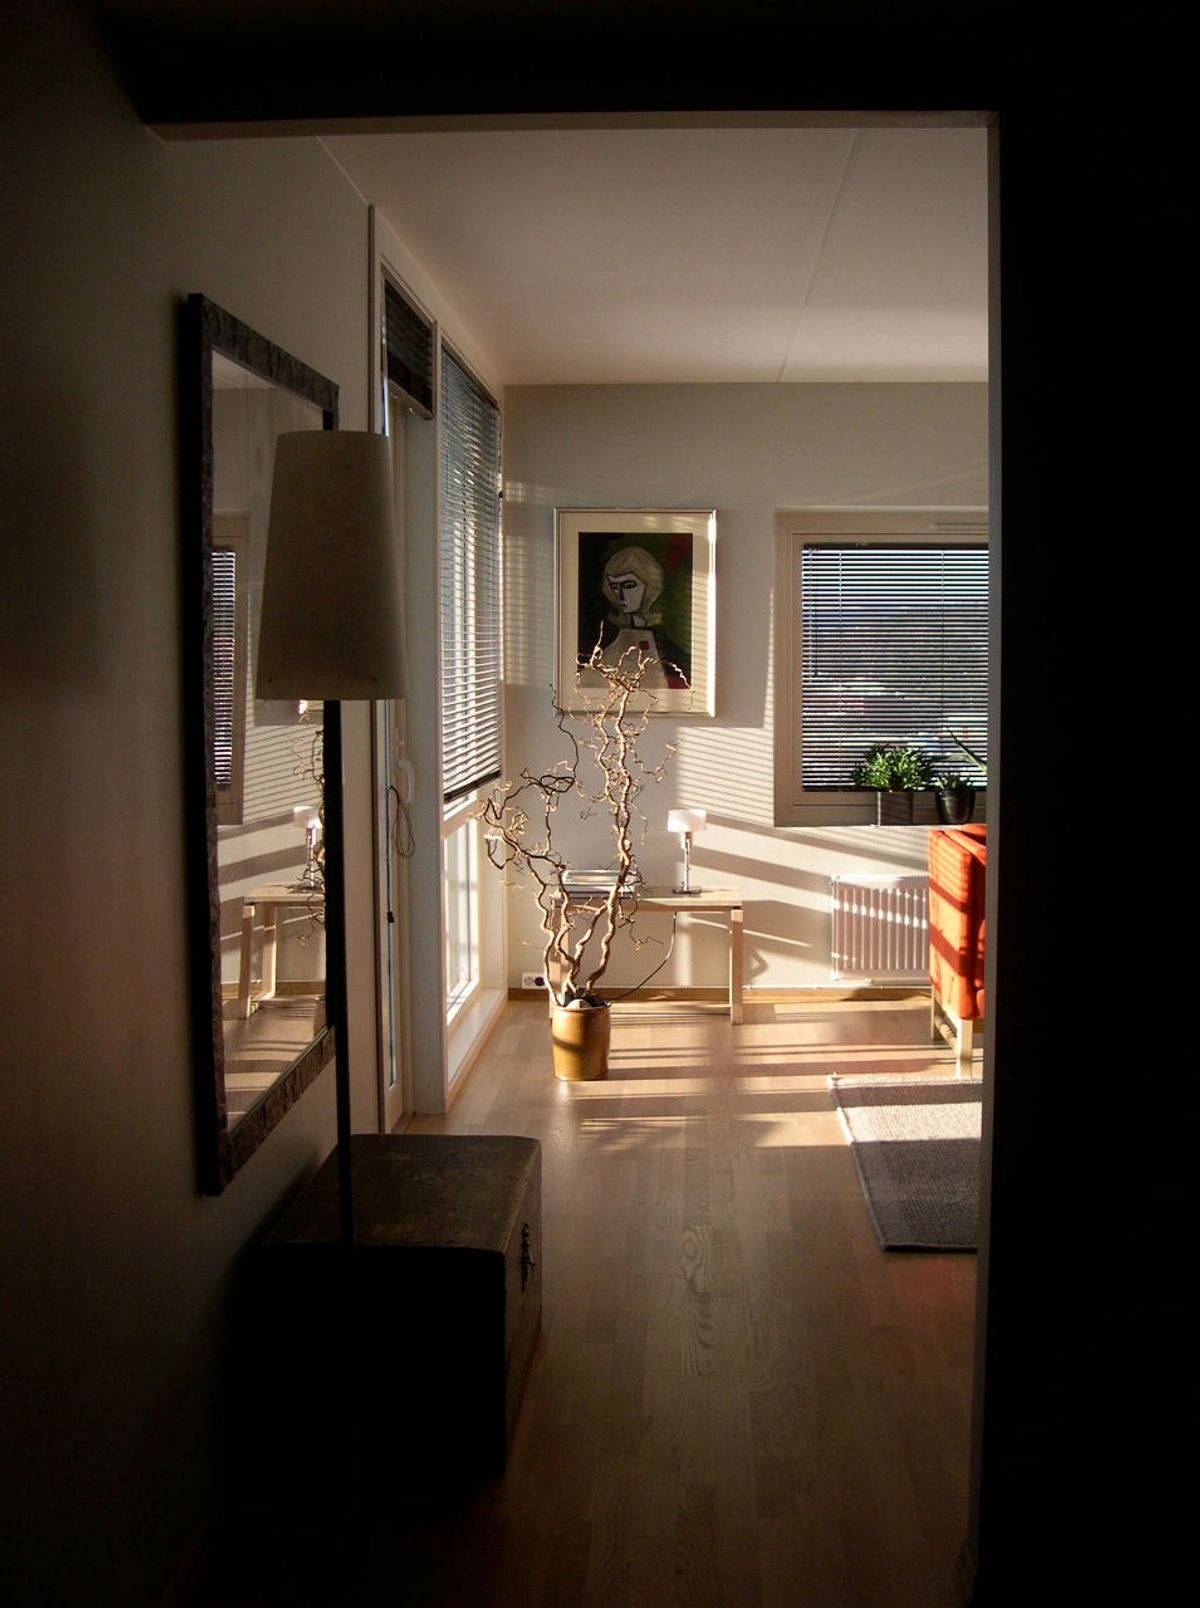 Foto av interiør i en leilighet med stor vindusflate og dagslys inn vinduet.